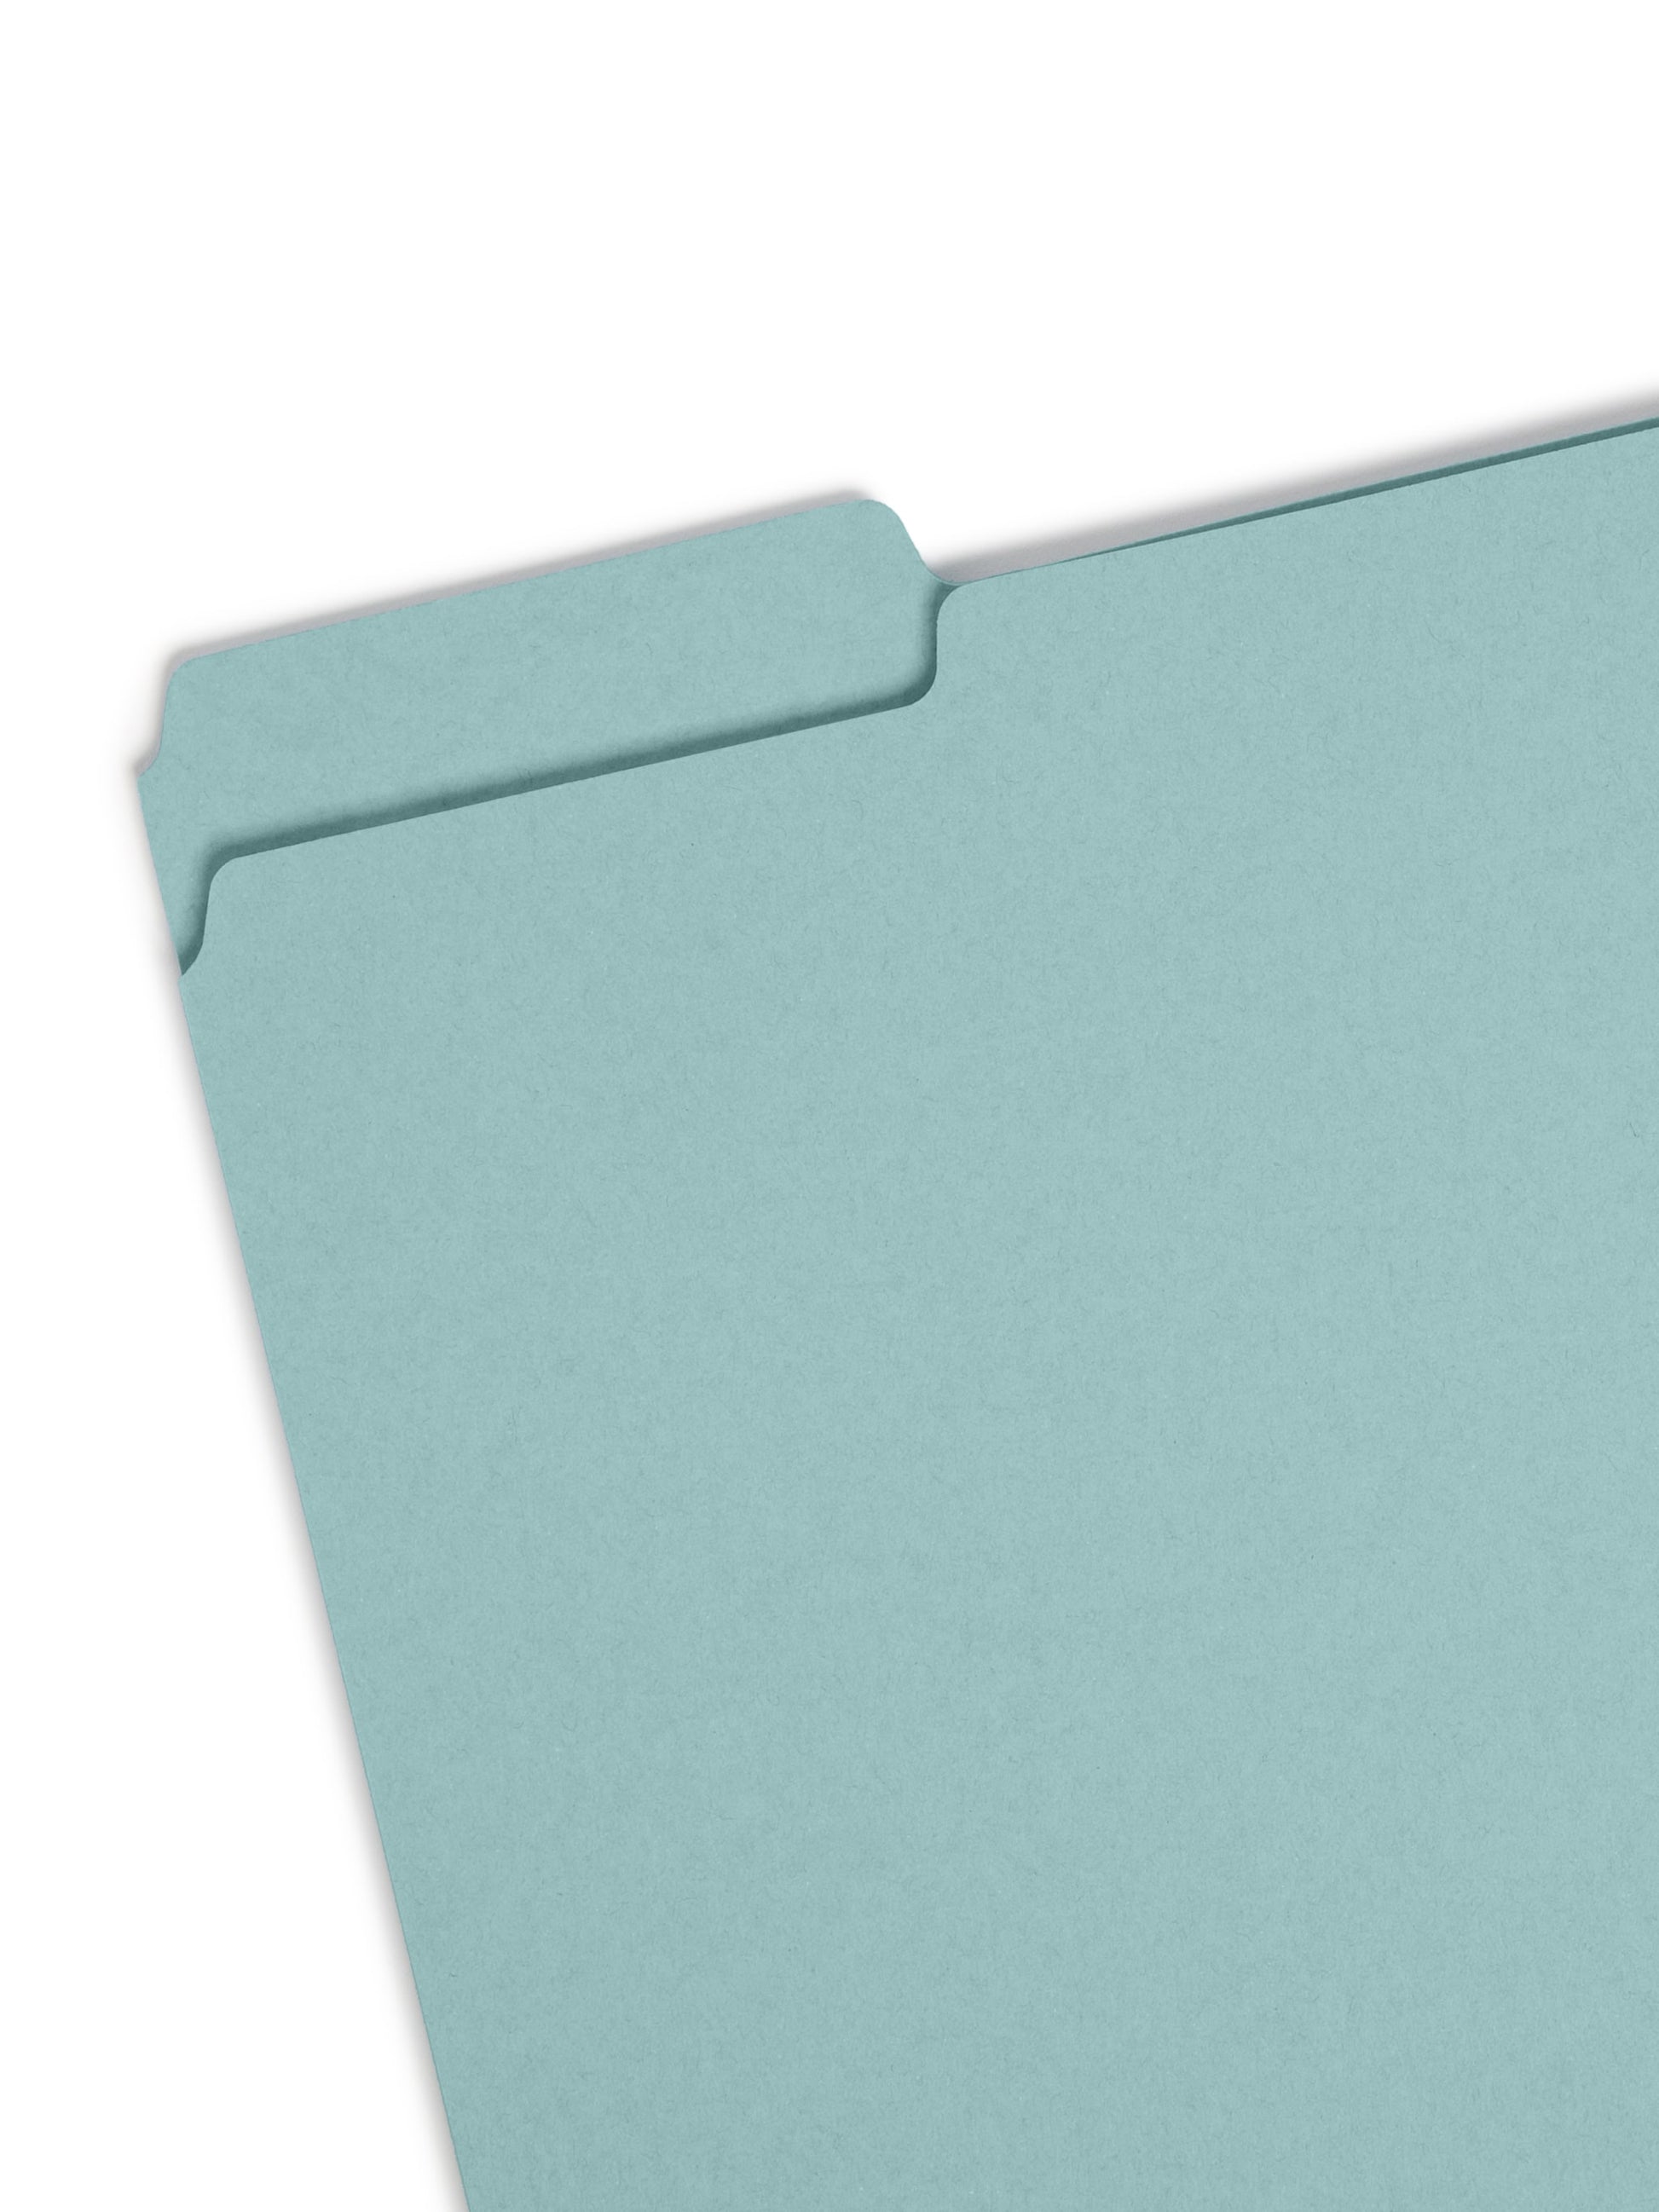 Pressboard File Folder, 1 inch Expansion, 1/3-Cut Tab, Blue Color, Letter Size, Set of 25, 086486215305